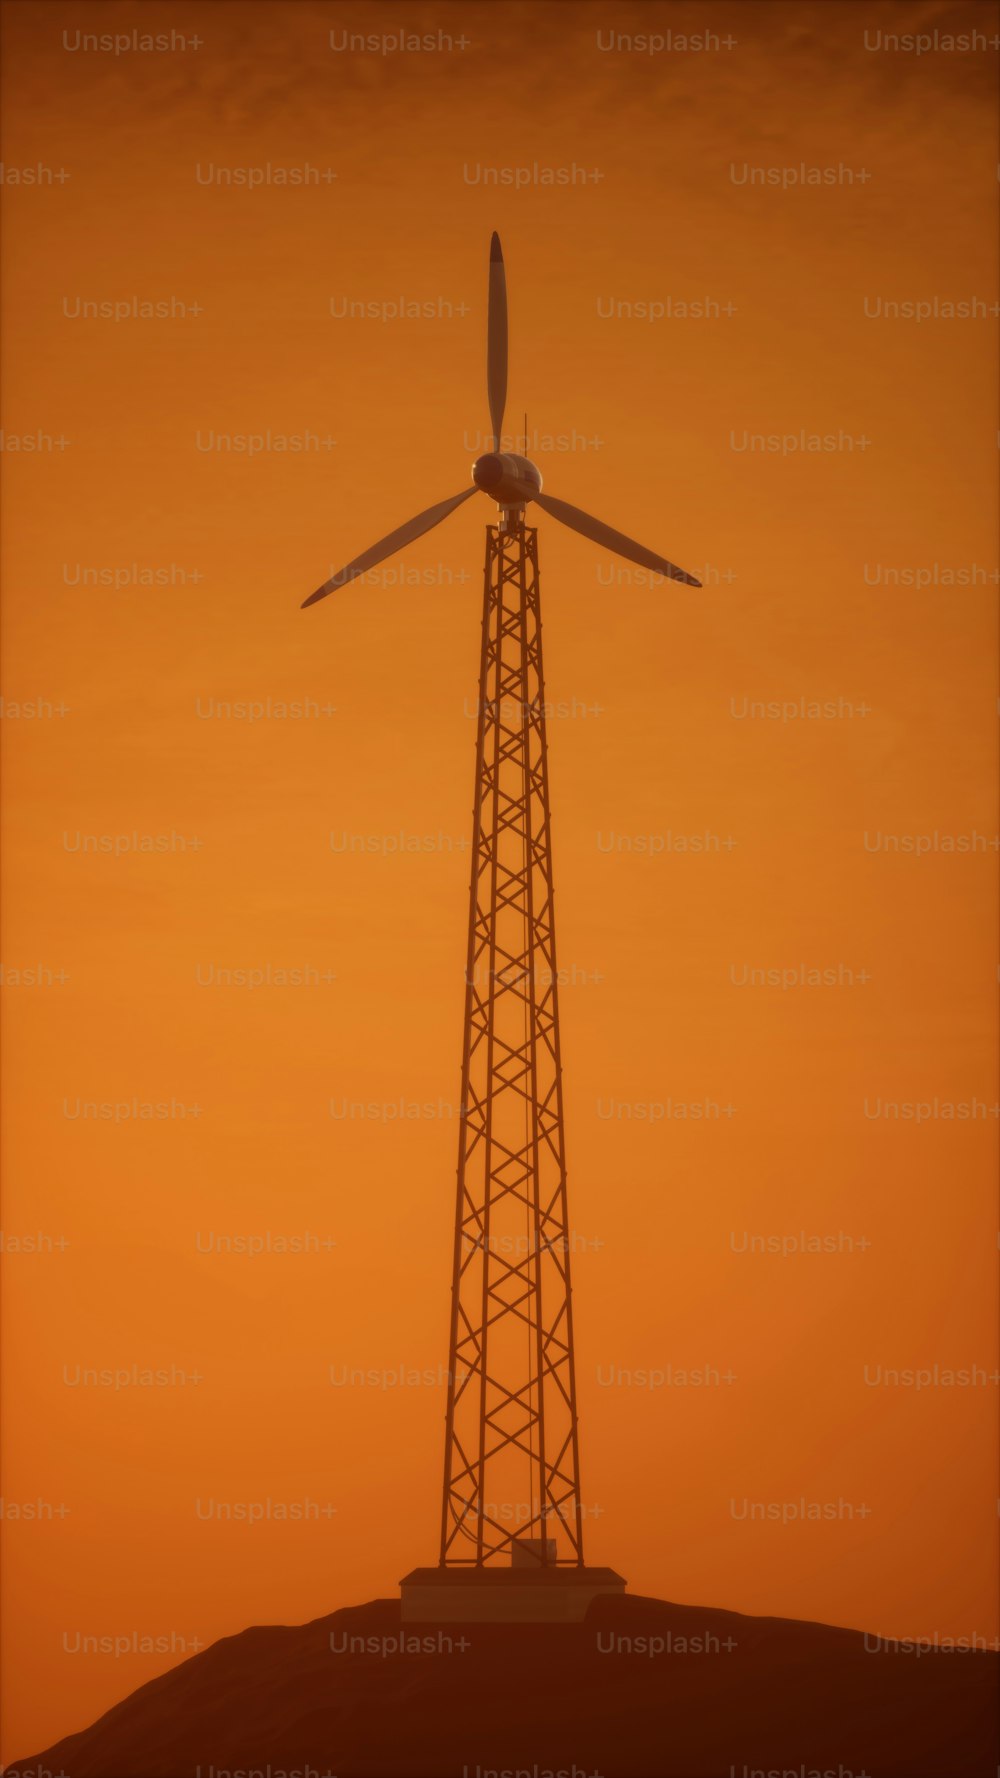 Eine Windkraftanlage auf einem Hügel